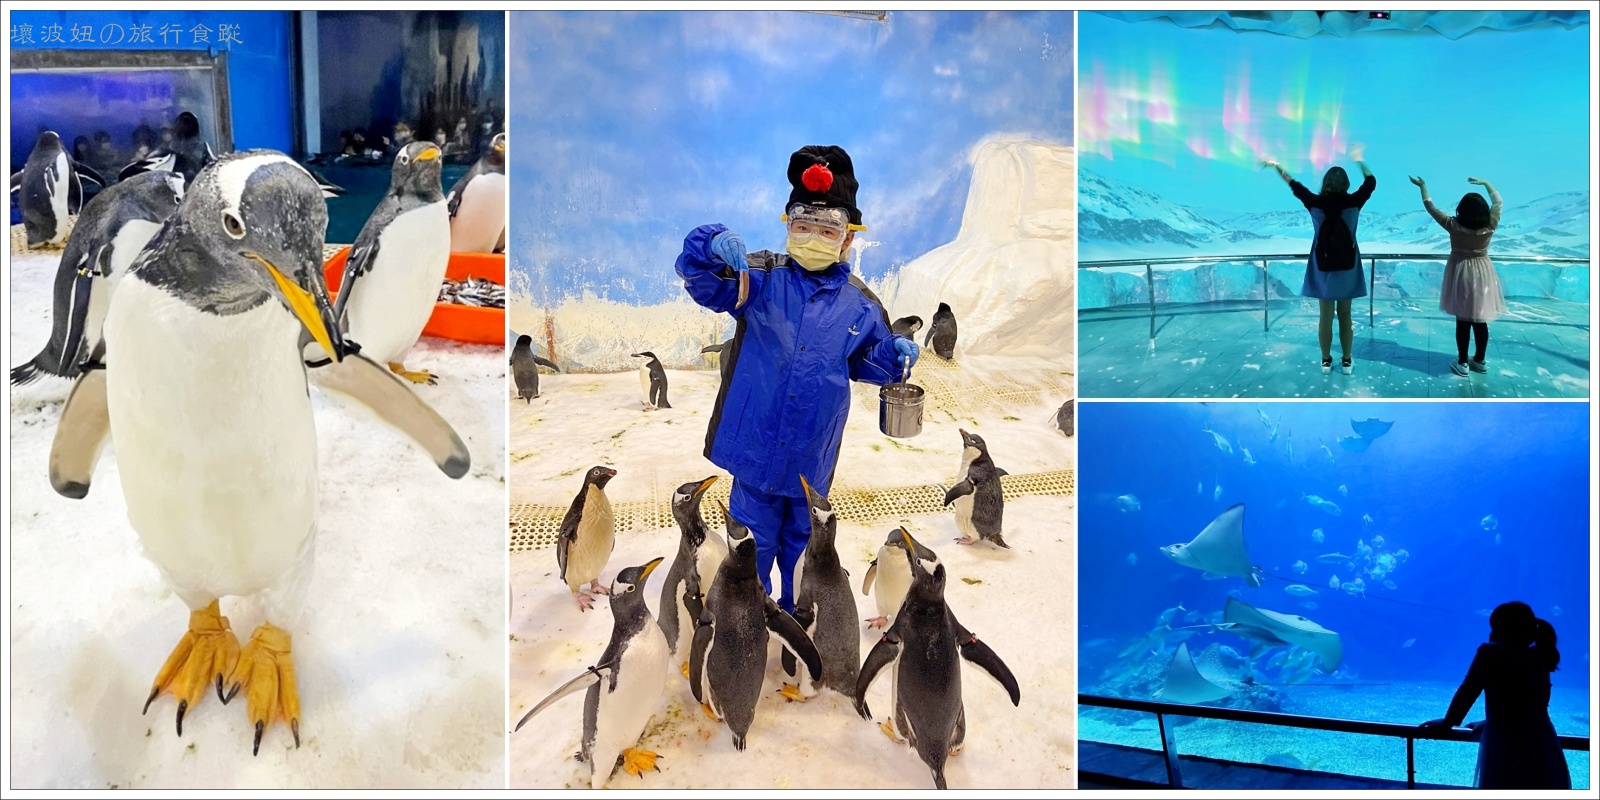 【屏東親子景點】我與企鵝的0.1毫米｜企鵝飼育照護體驗 - 絕對秒殺的屏東海生館餵企鵝體驗 - 屏東海生館 餐廳 - 壞波妞の旅行食踨